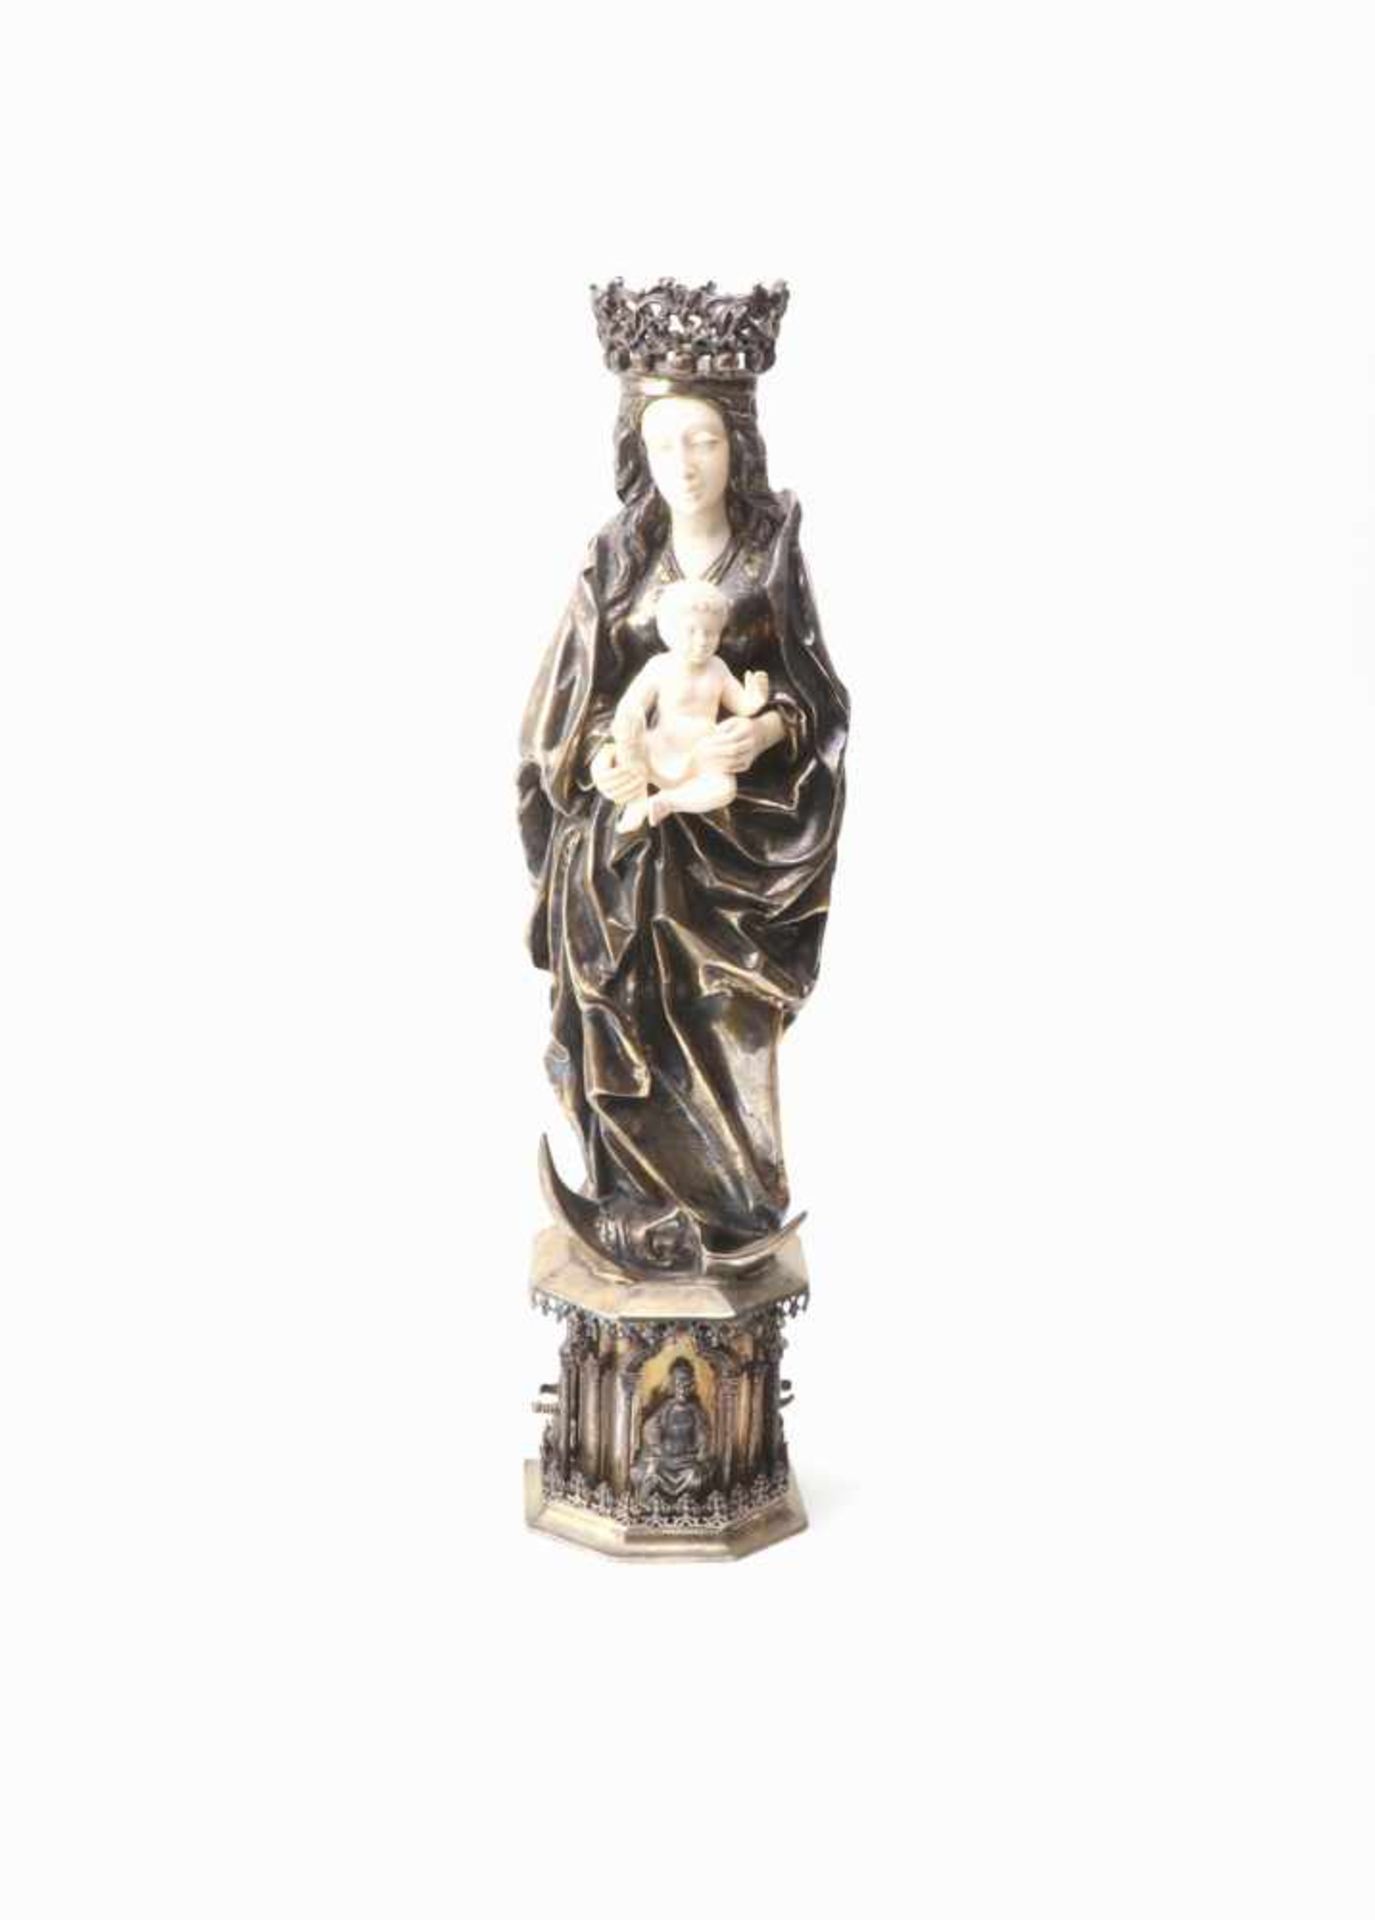 Große Mondsichel-Madonna in gotischem Stil,Silberwarenmanufaktur L. Neresheimer & Co. - Hanau, um